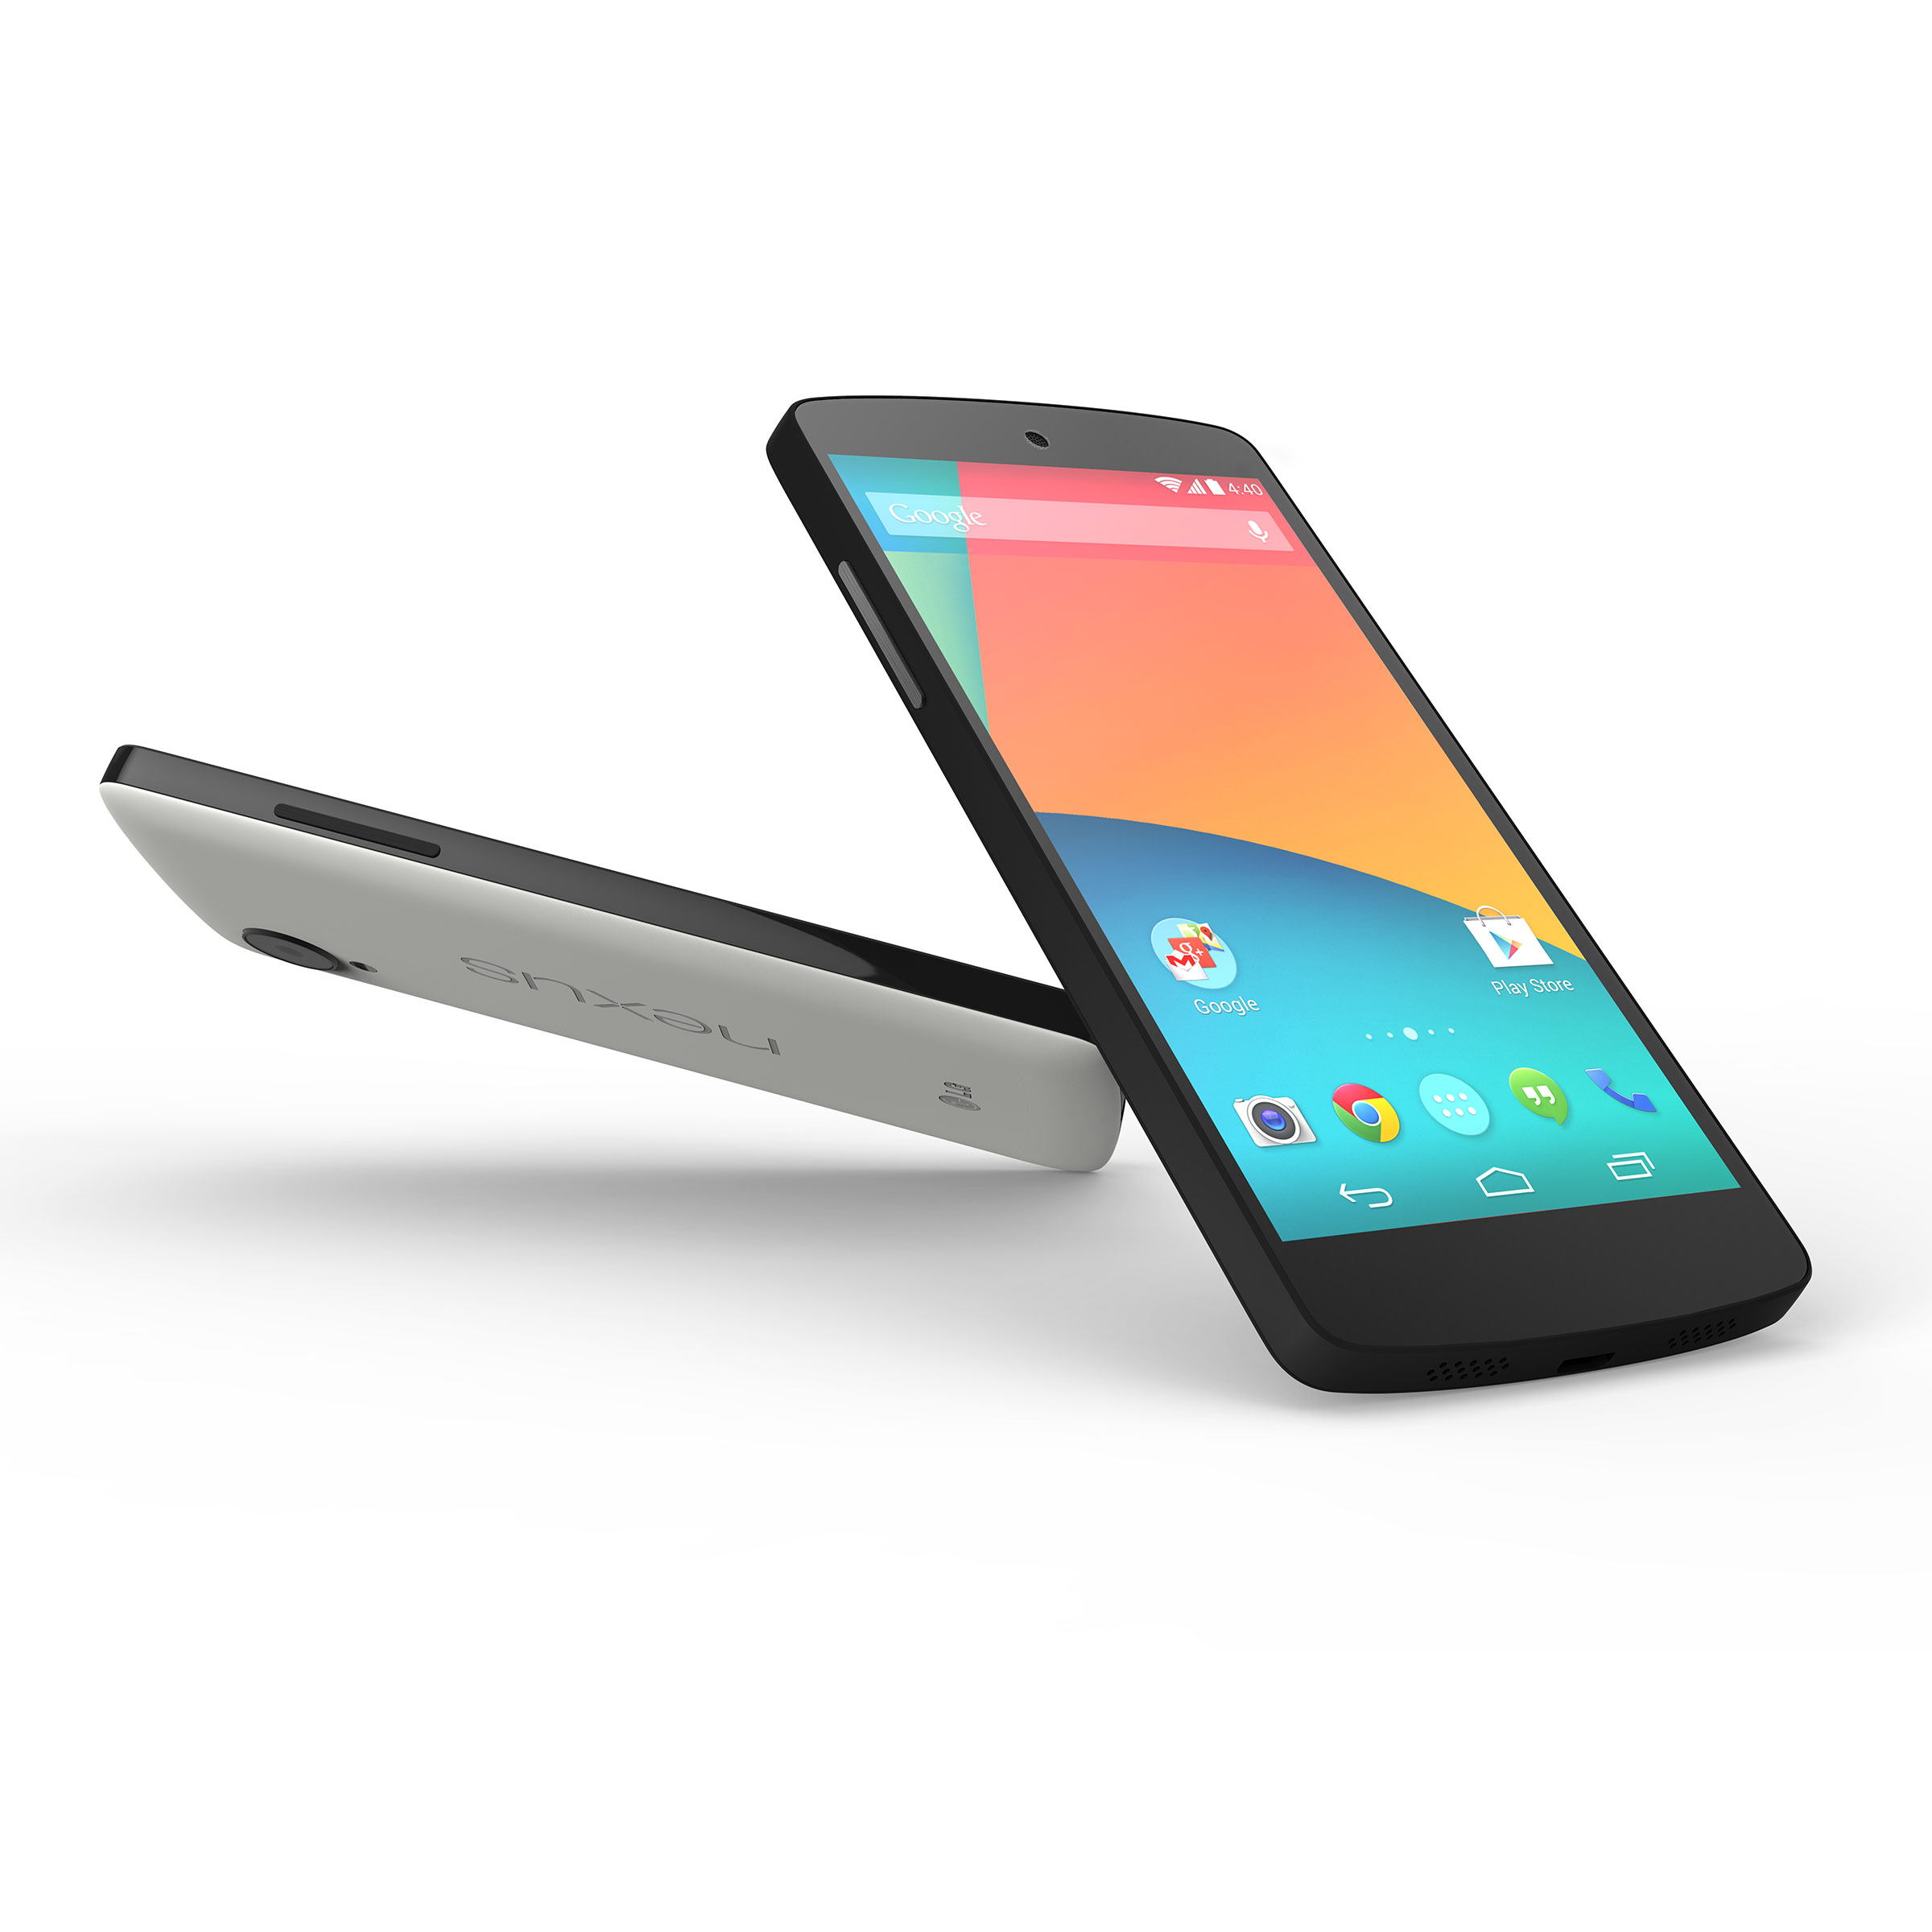 Immagine pubblicata in relazione al seguente contenuto: Google lancia lo smartphone Nexus 5 e l'OS Android 4.4 KitKat | Nome immagine: news20294_Google-Nexus-5_2.jpg